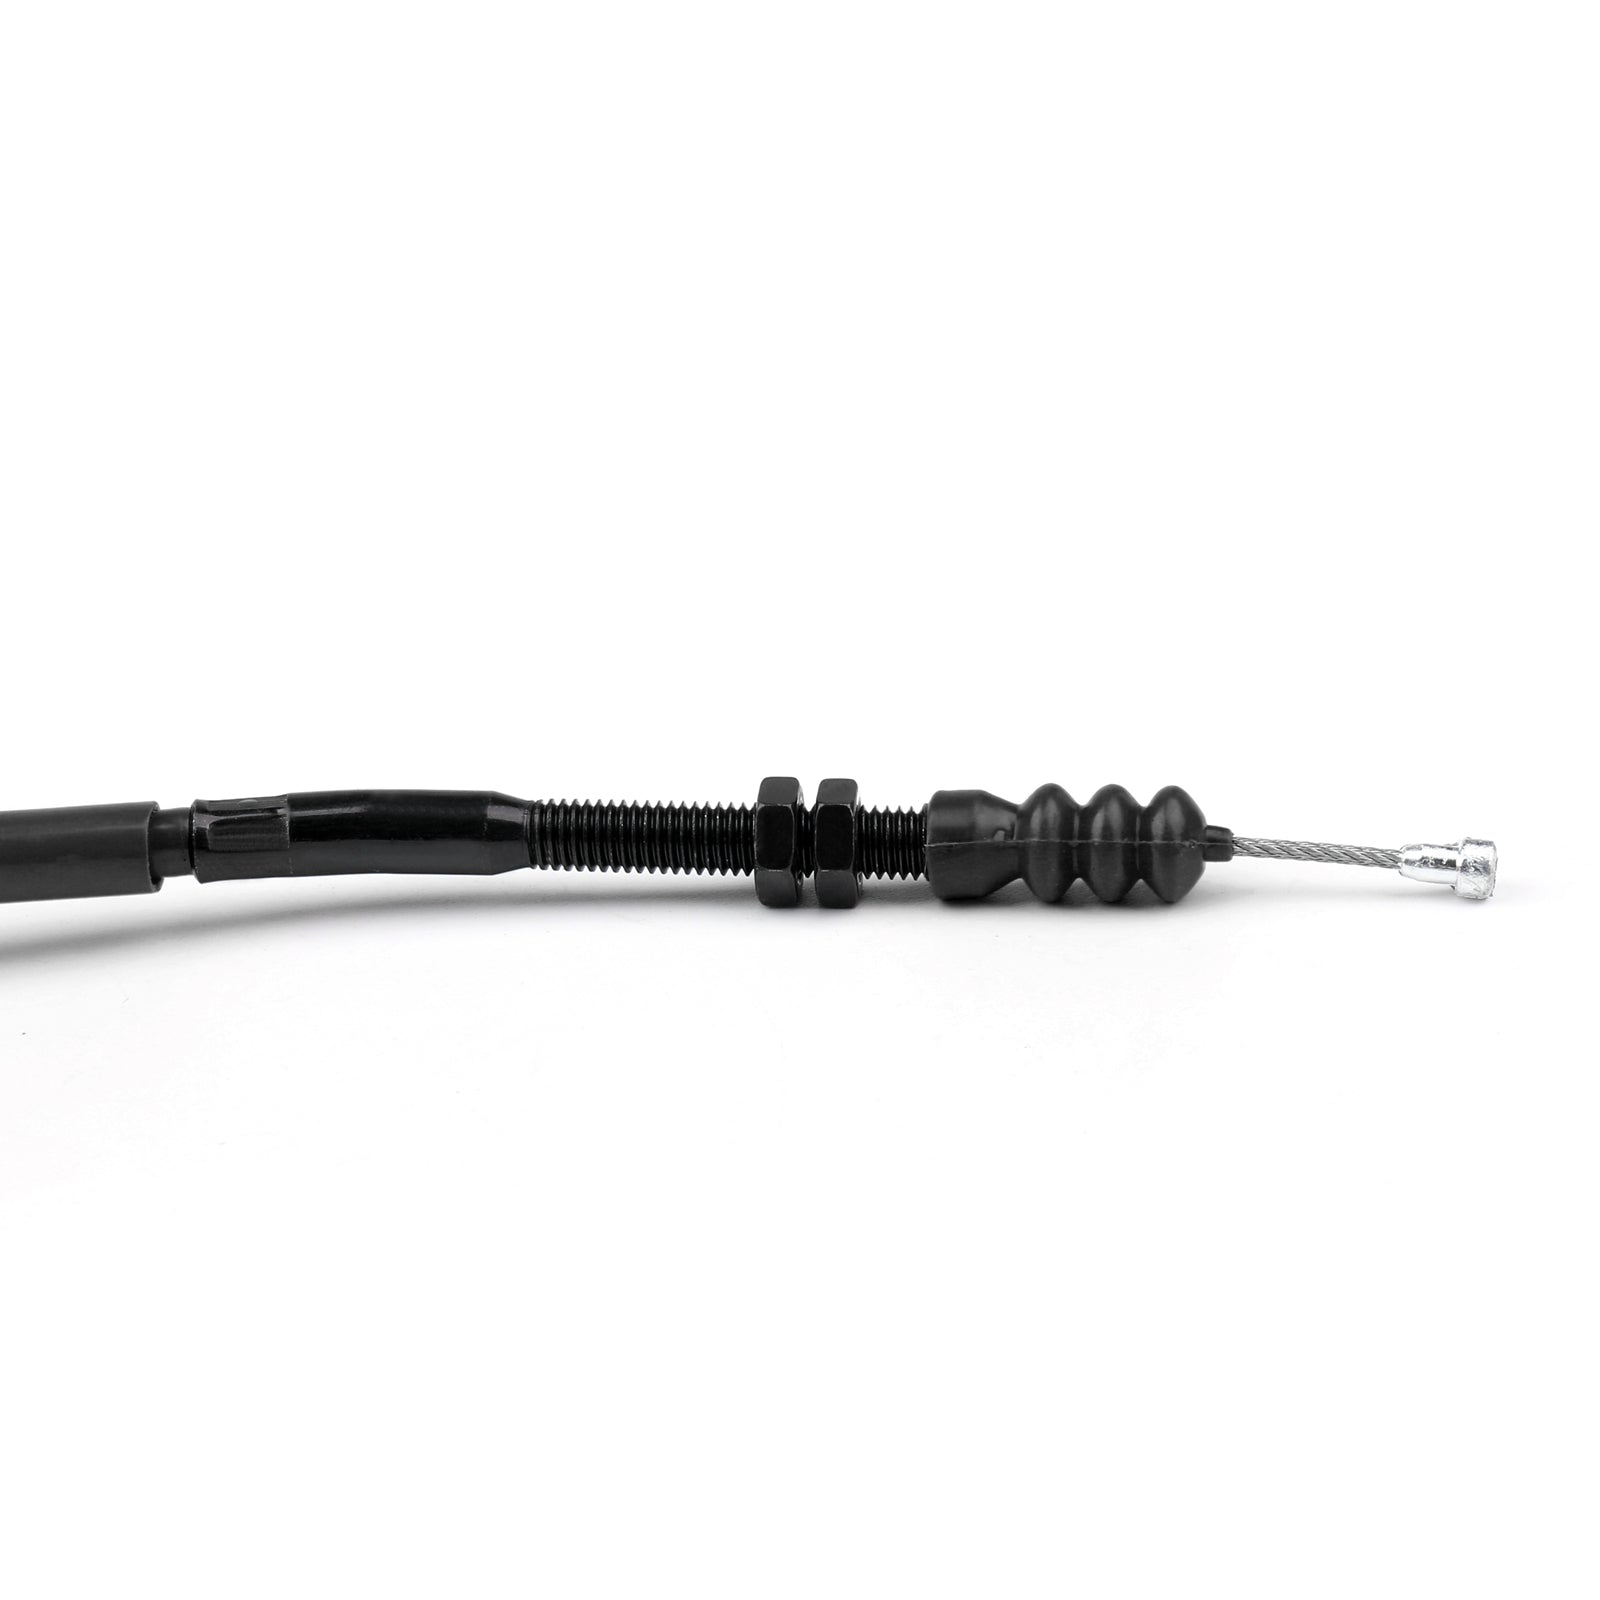 Reemplazo de alambre de acero de cable de embrague para Kawasaki Z1000 2010-2013 genérico